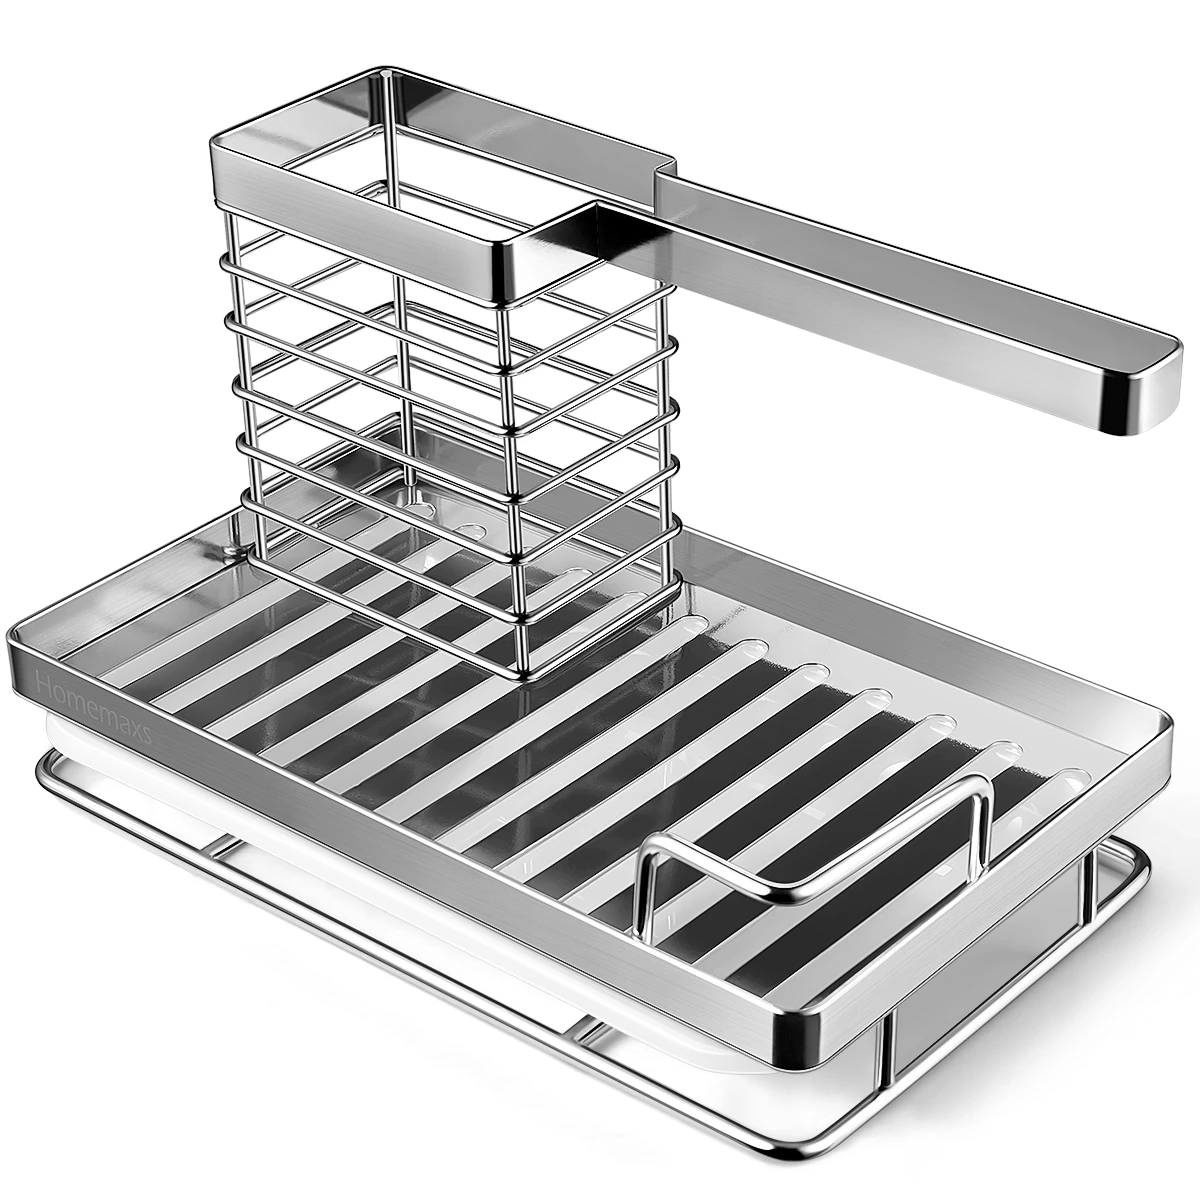 Kitchen Sink Organizer Stainless Steel Dish Kitchen Utensils Holder Sponge Brush Rack with Drain Pan for Home Kitchen Restaurant